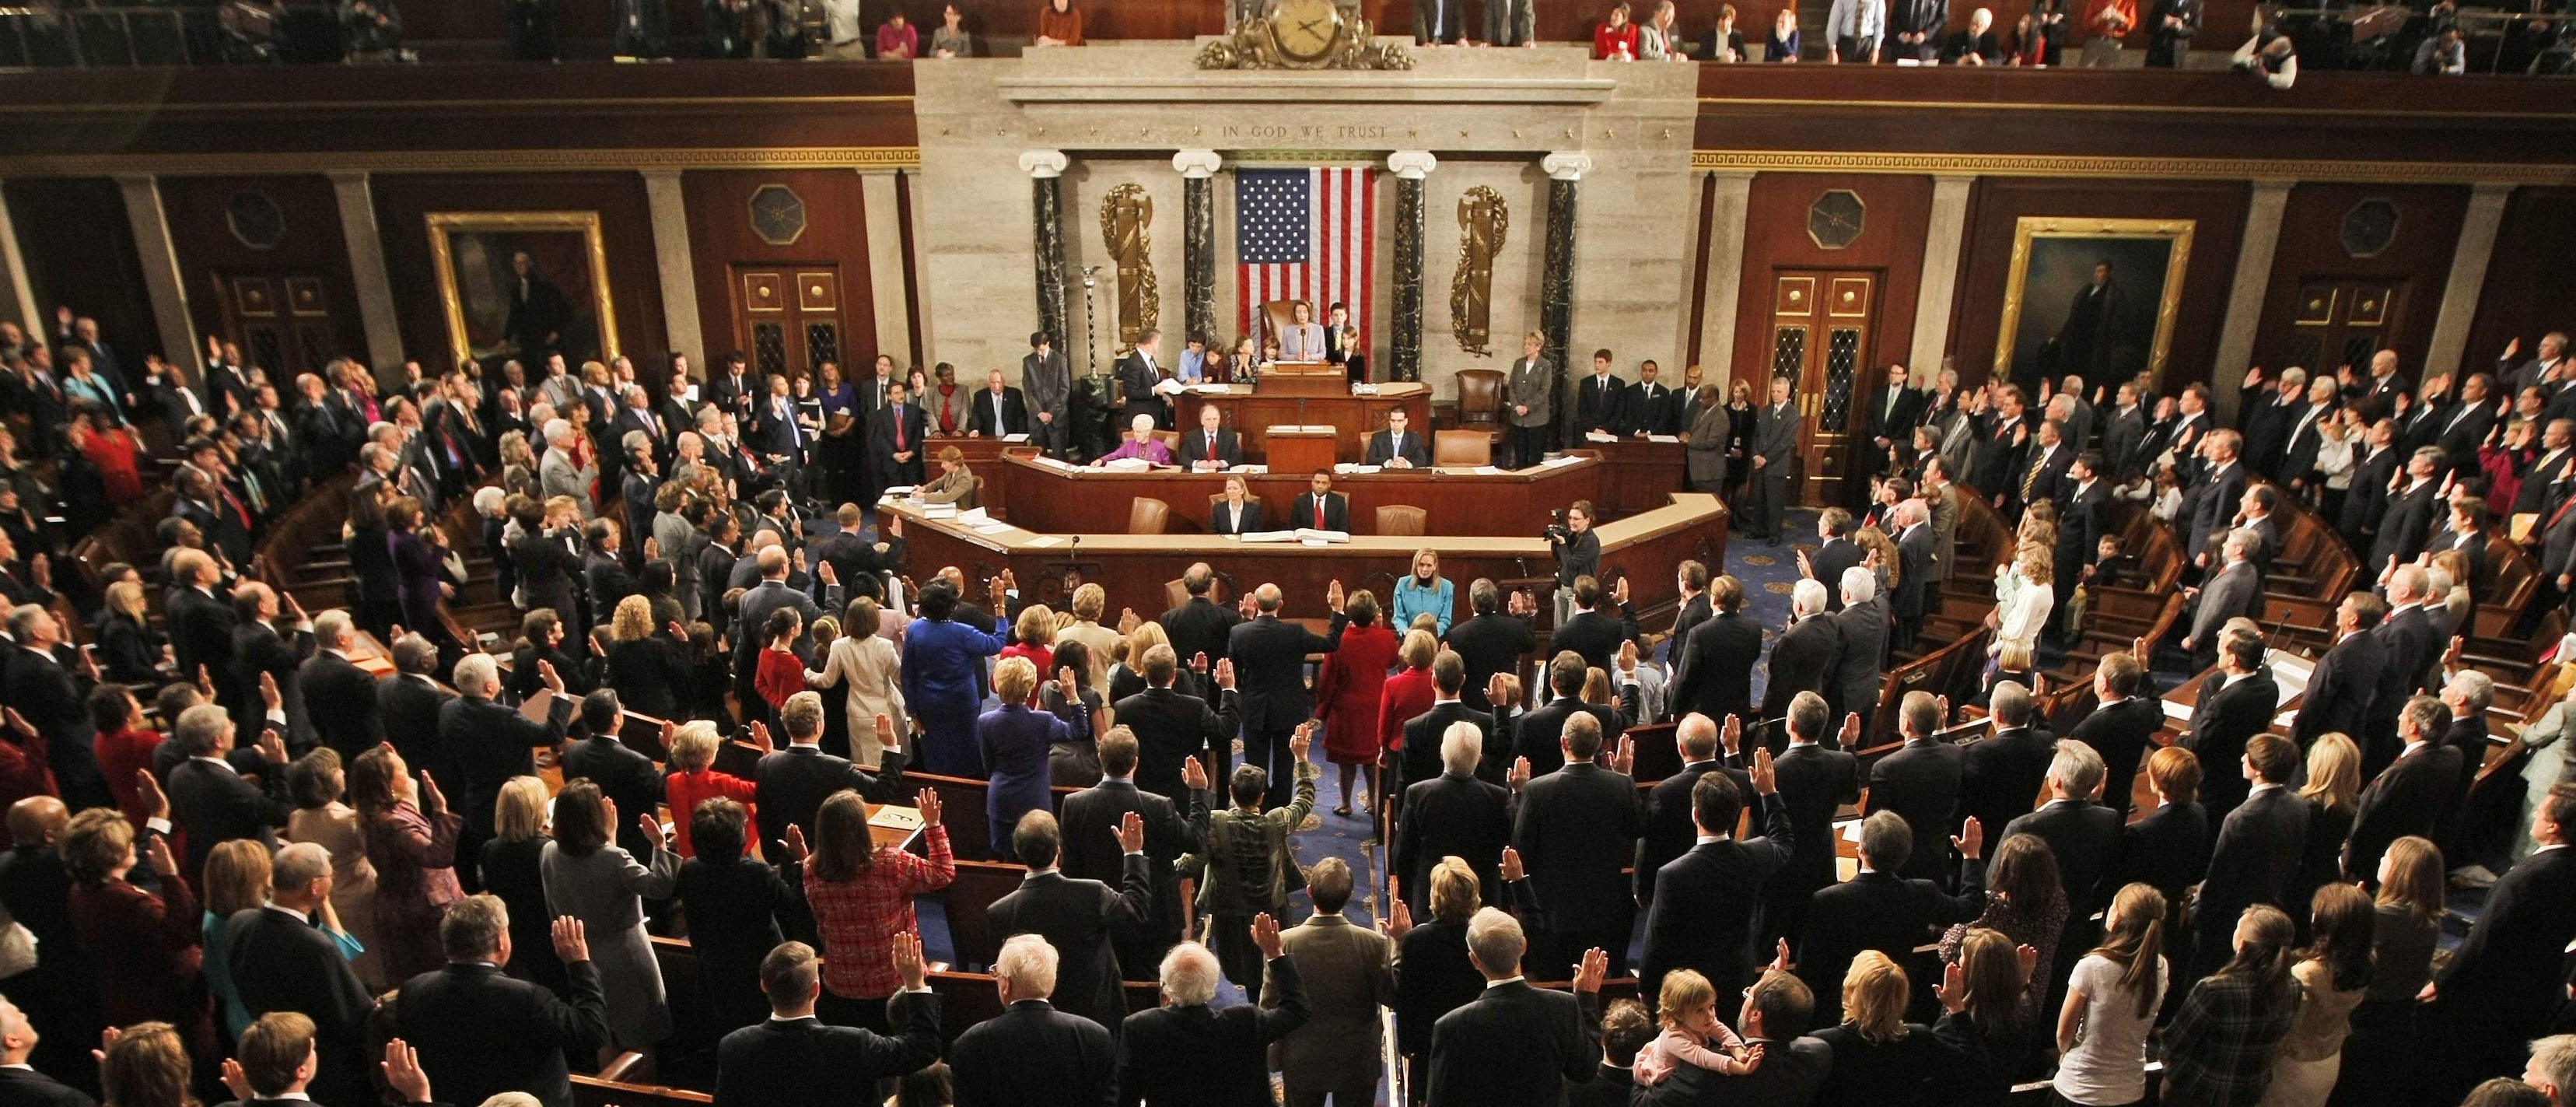 EE.UU.: Instalan “Congressional Caucus on Perú” en el Capitolio